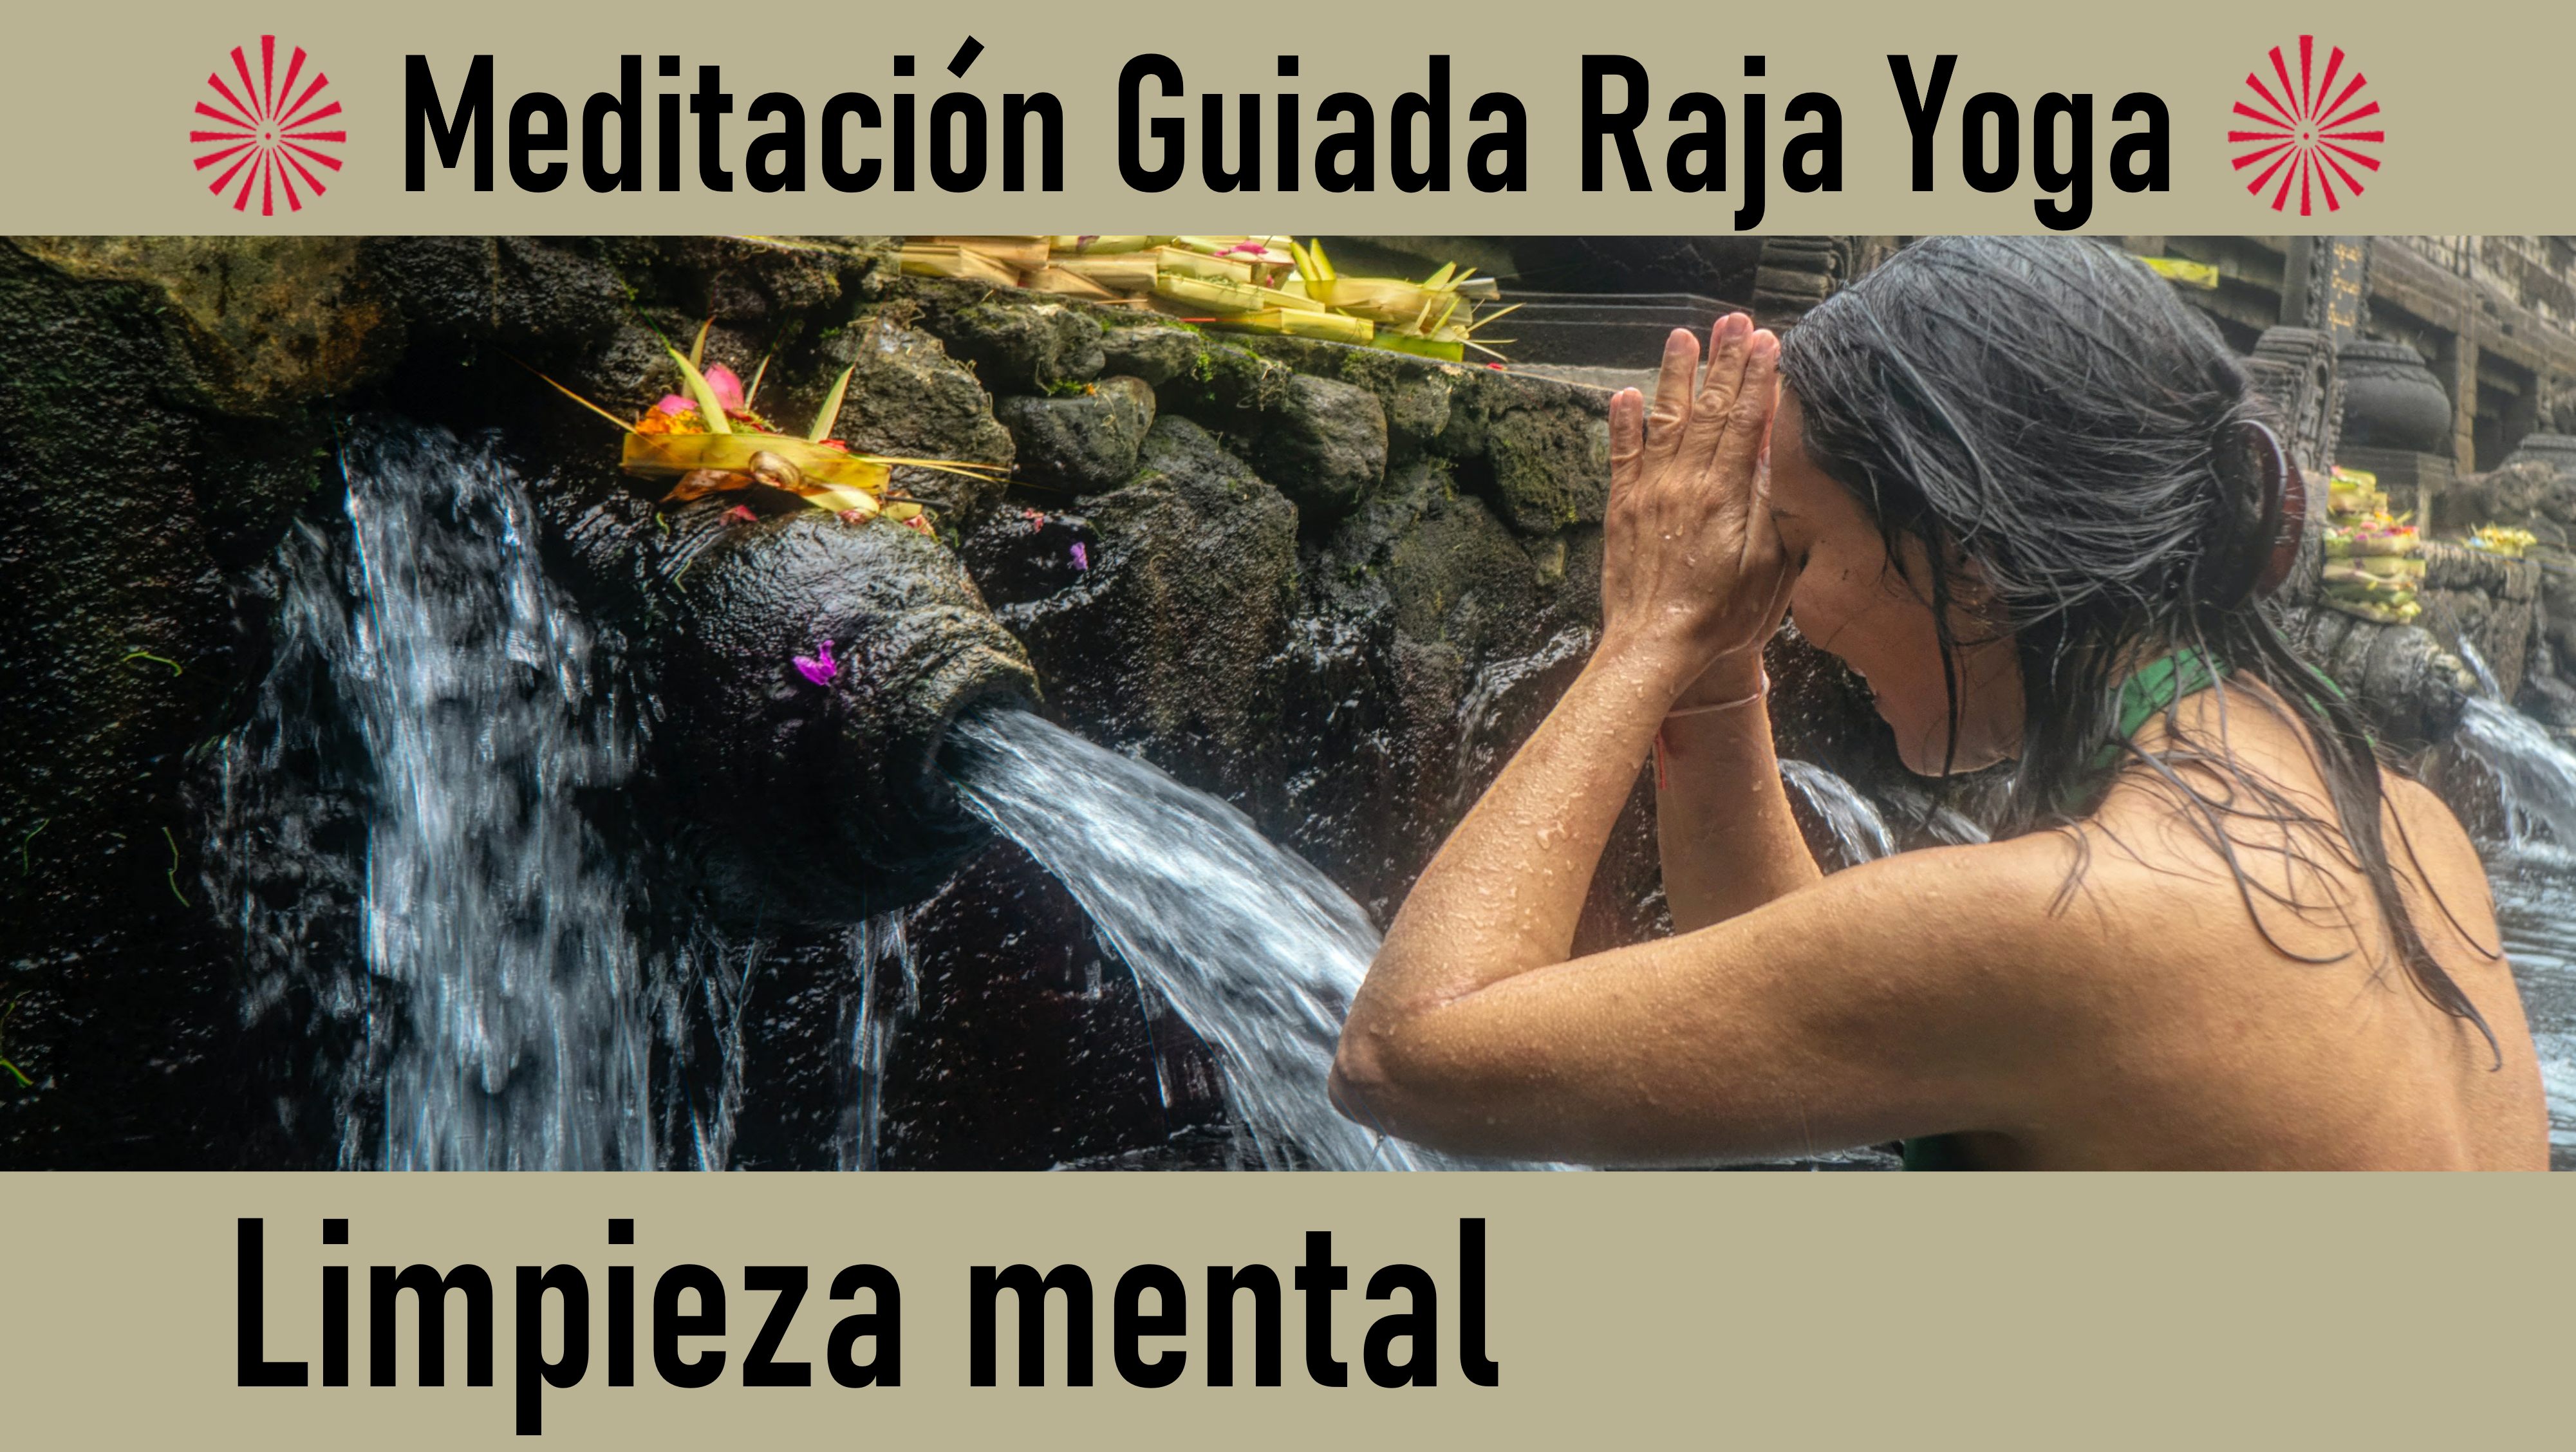 Meditación Raja Yoga: Limpieza mental (4 Septiembre 2020) On-line desde Madrid